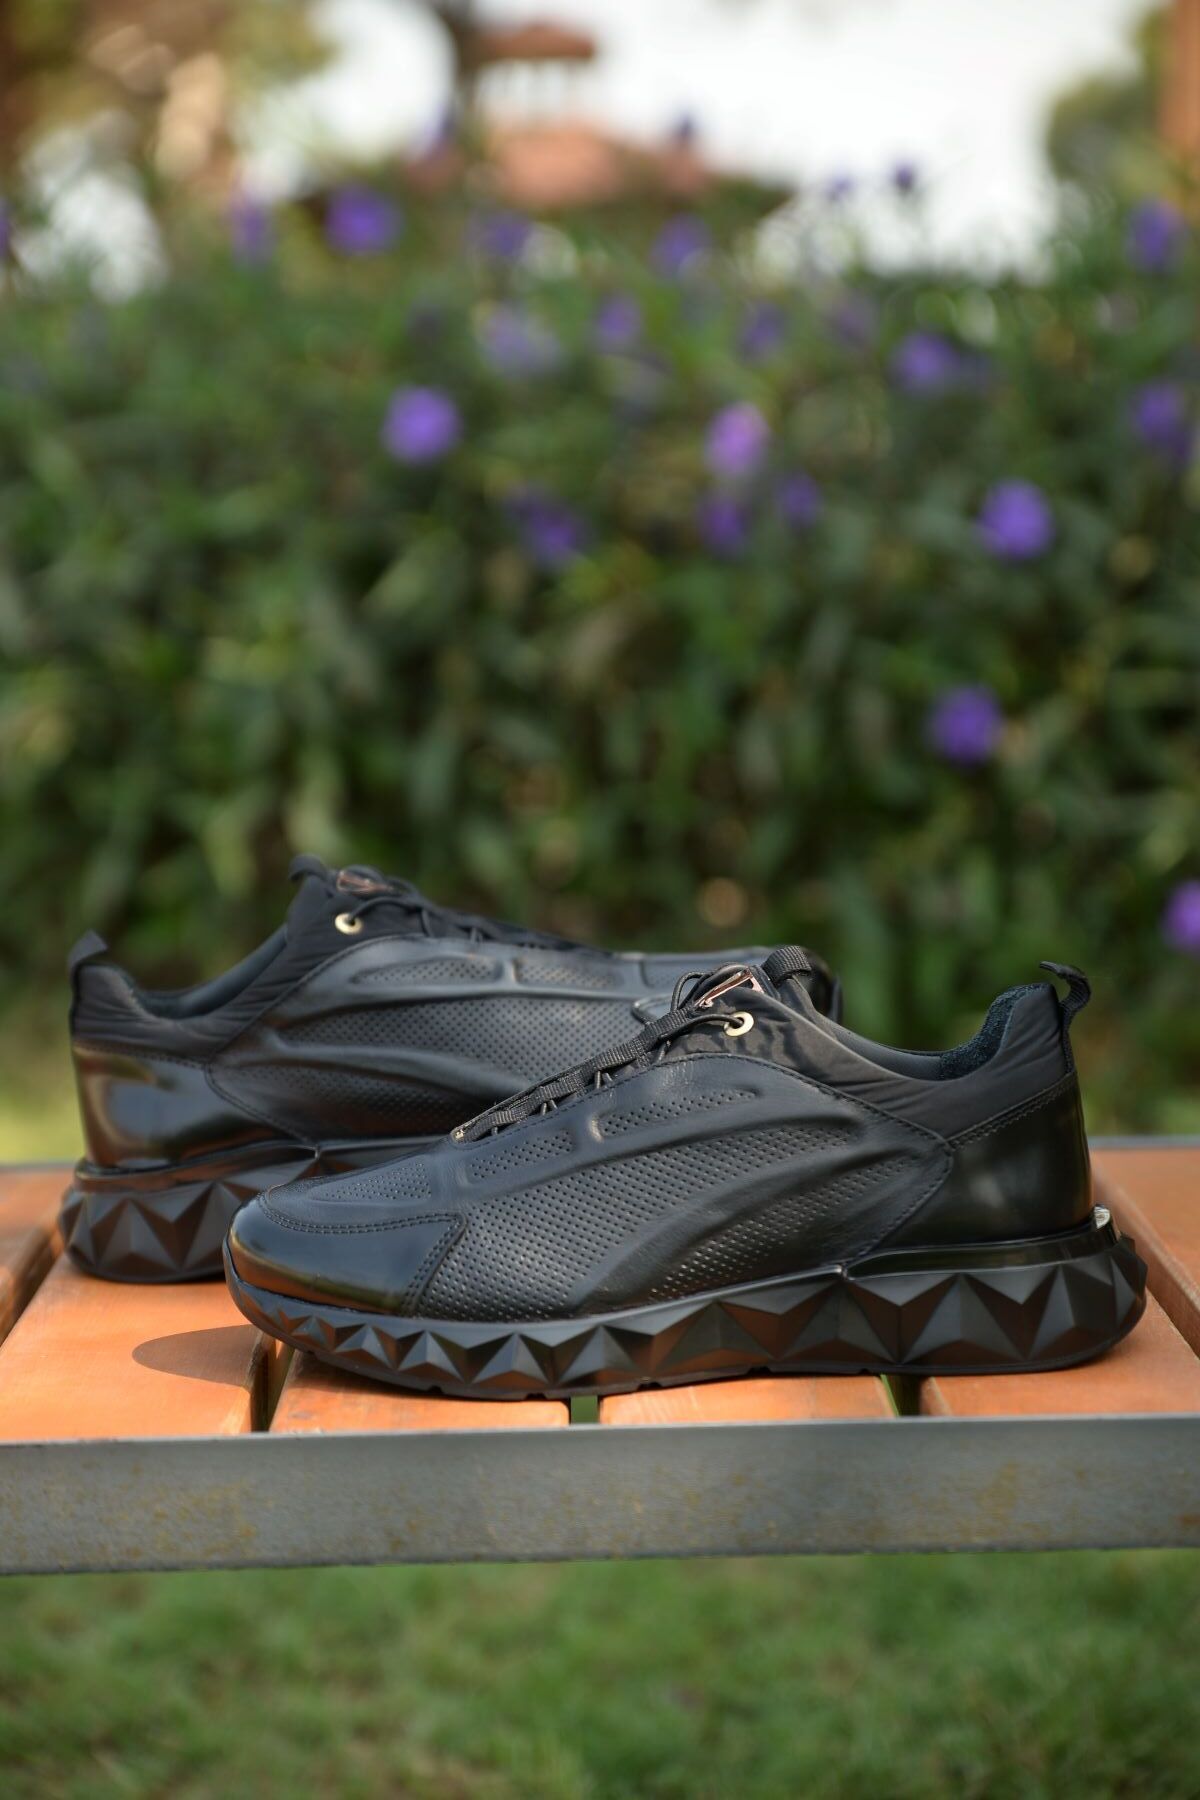 MARCOMEN Erkek Kışlık %100 Deri Siyah Sneaker Ayakkabı Yenilikçi Tarzıyla Şıklığı Ve Konforu Bir Arada Sunar